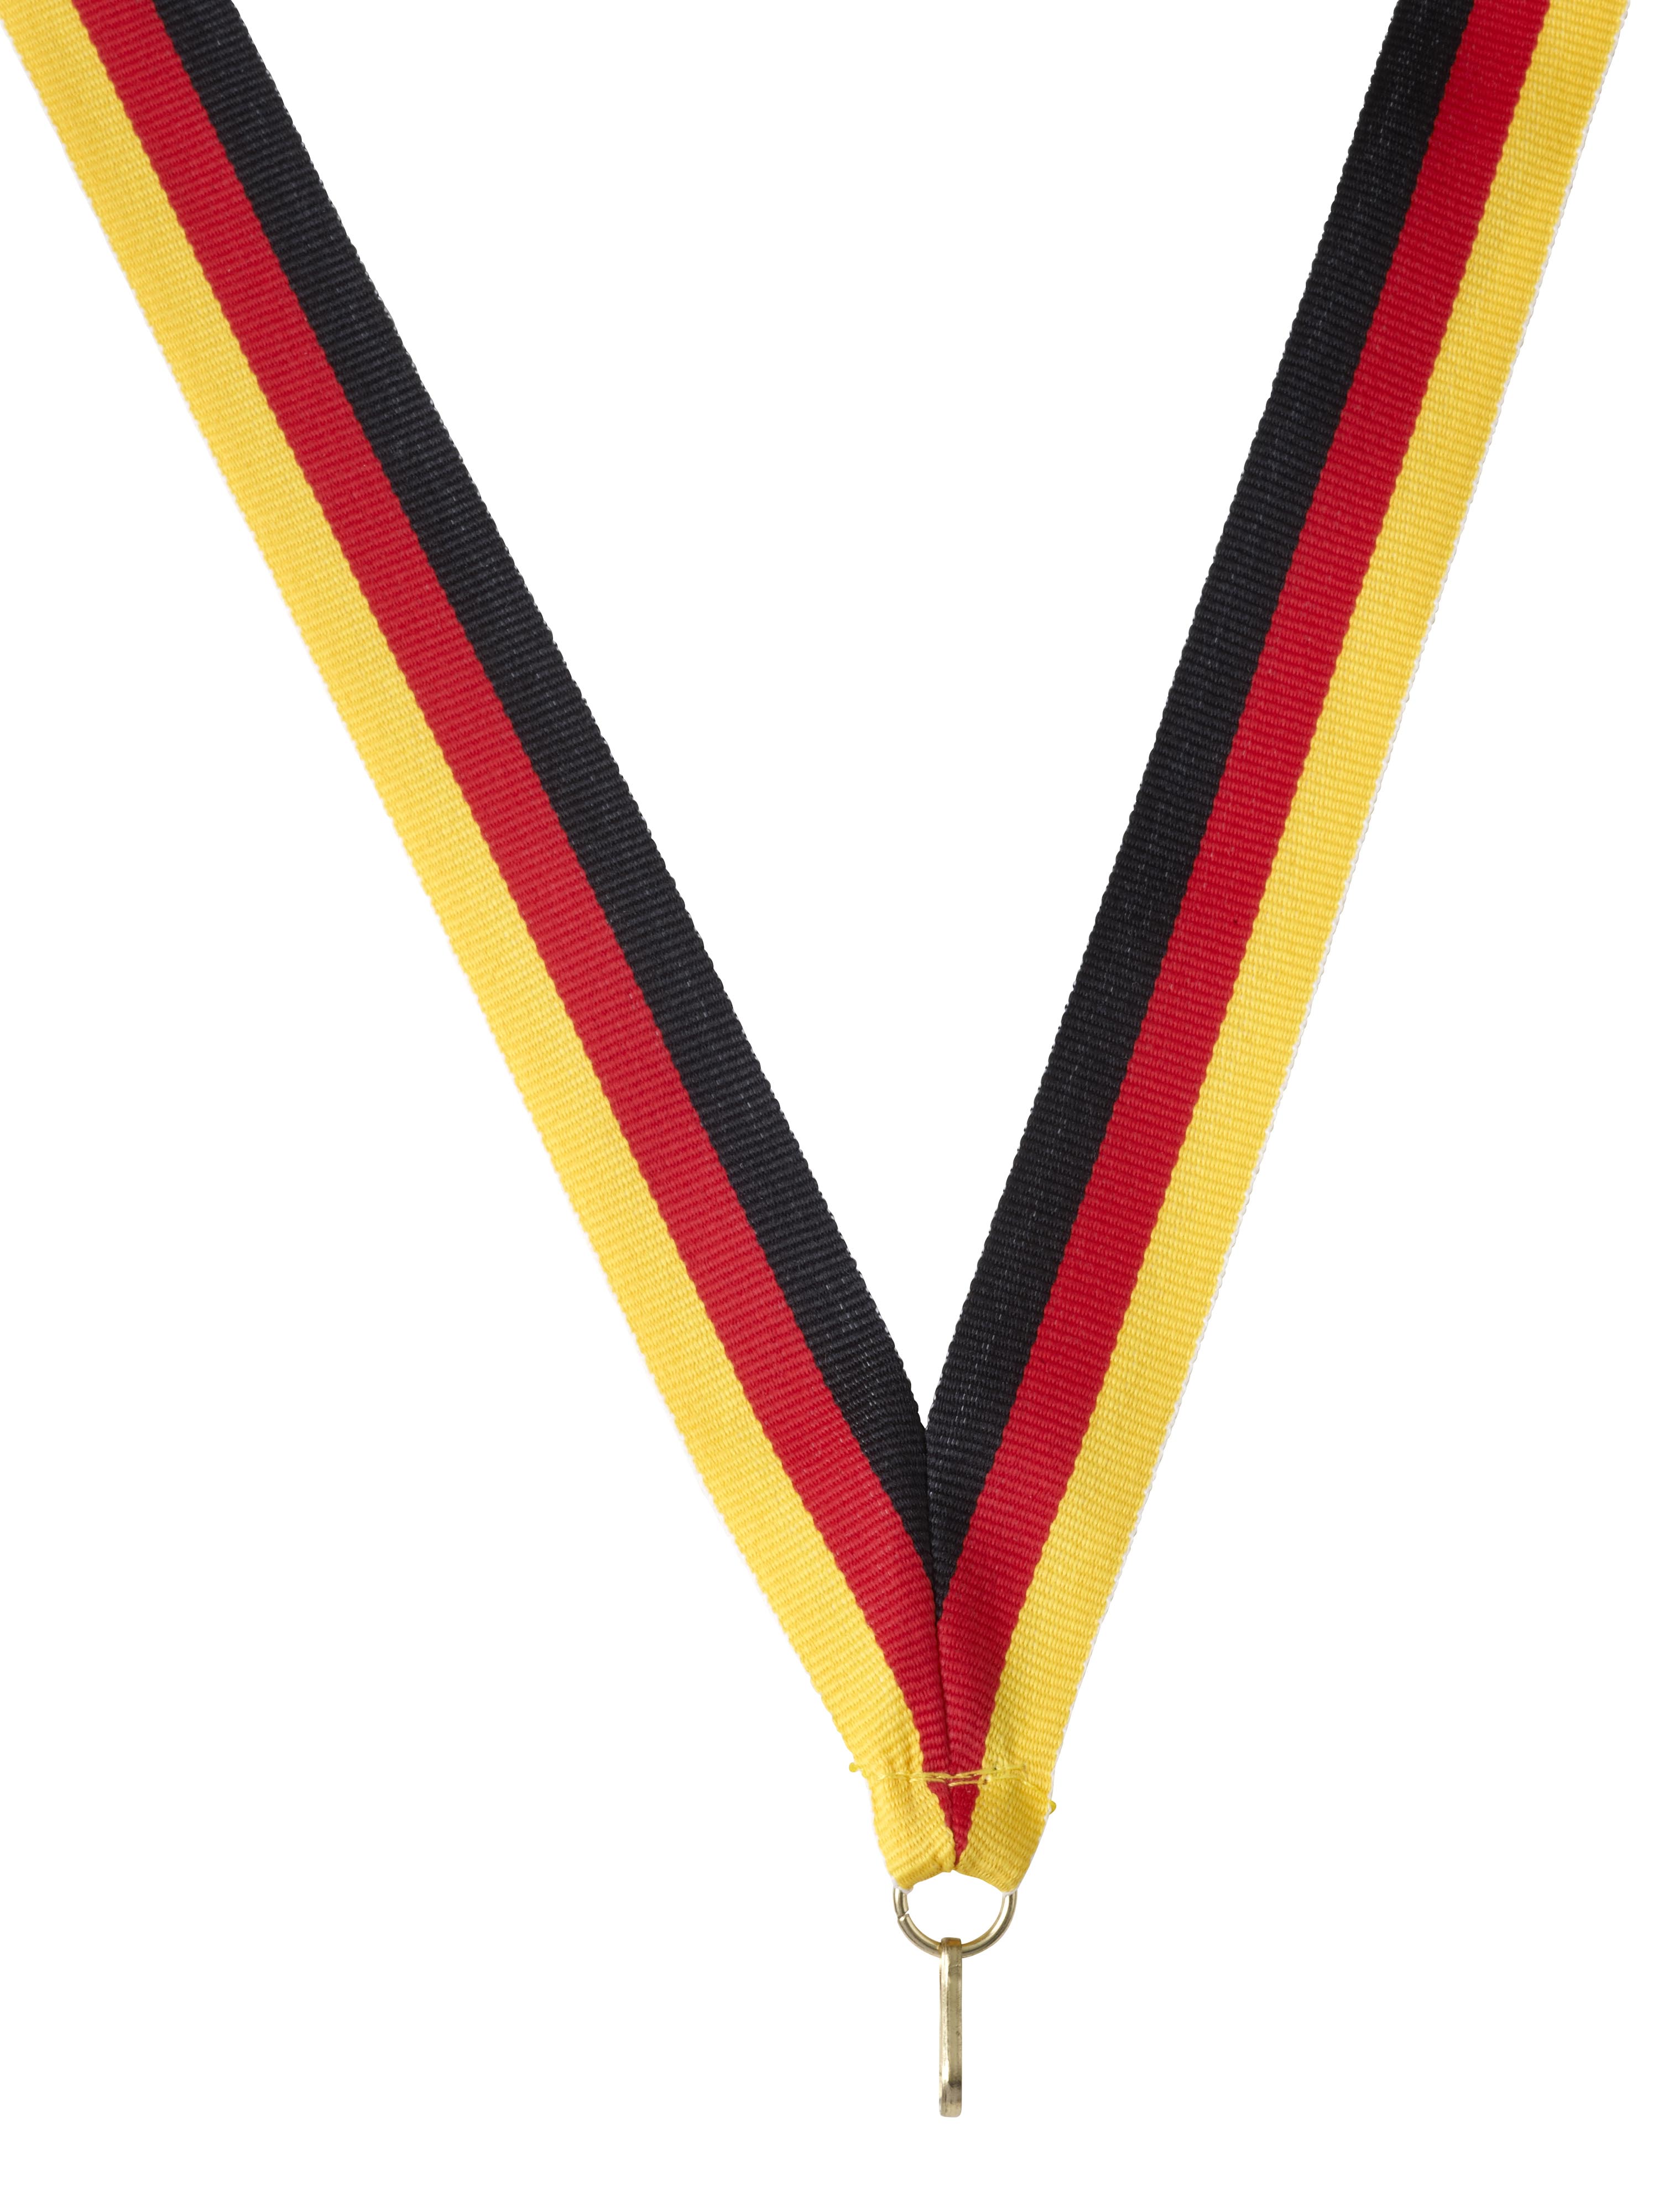 Medaillenband Deutschland